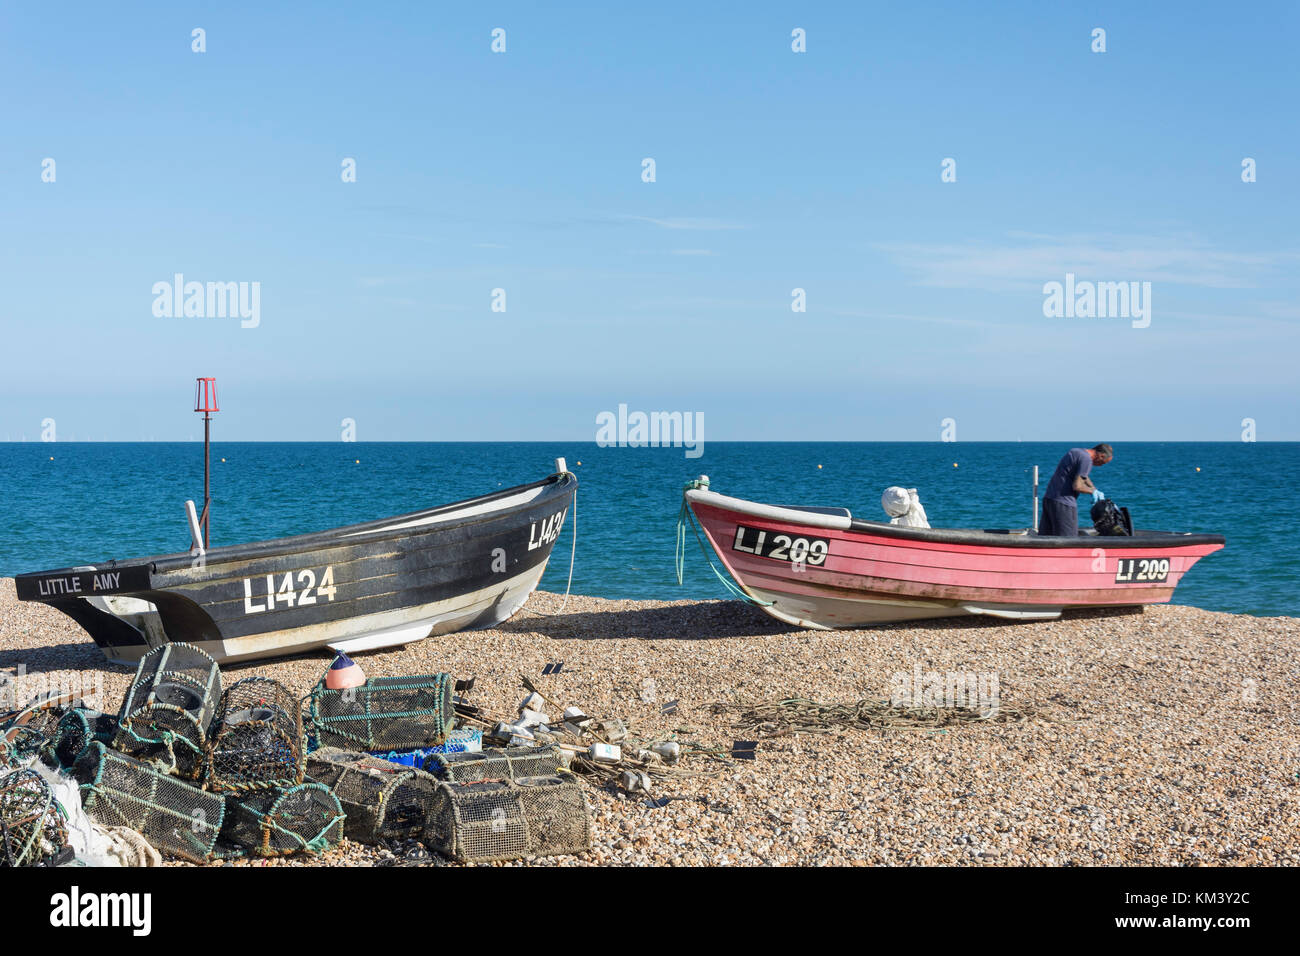 Bateau de pêche et des casiers à homard sur la plage, Bognor Regis, West Sussex, Angleterre, Royaume-Uni Banque D'Images